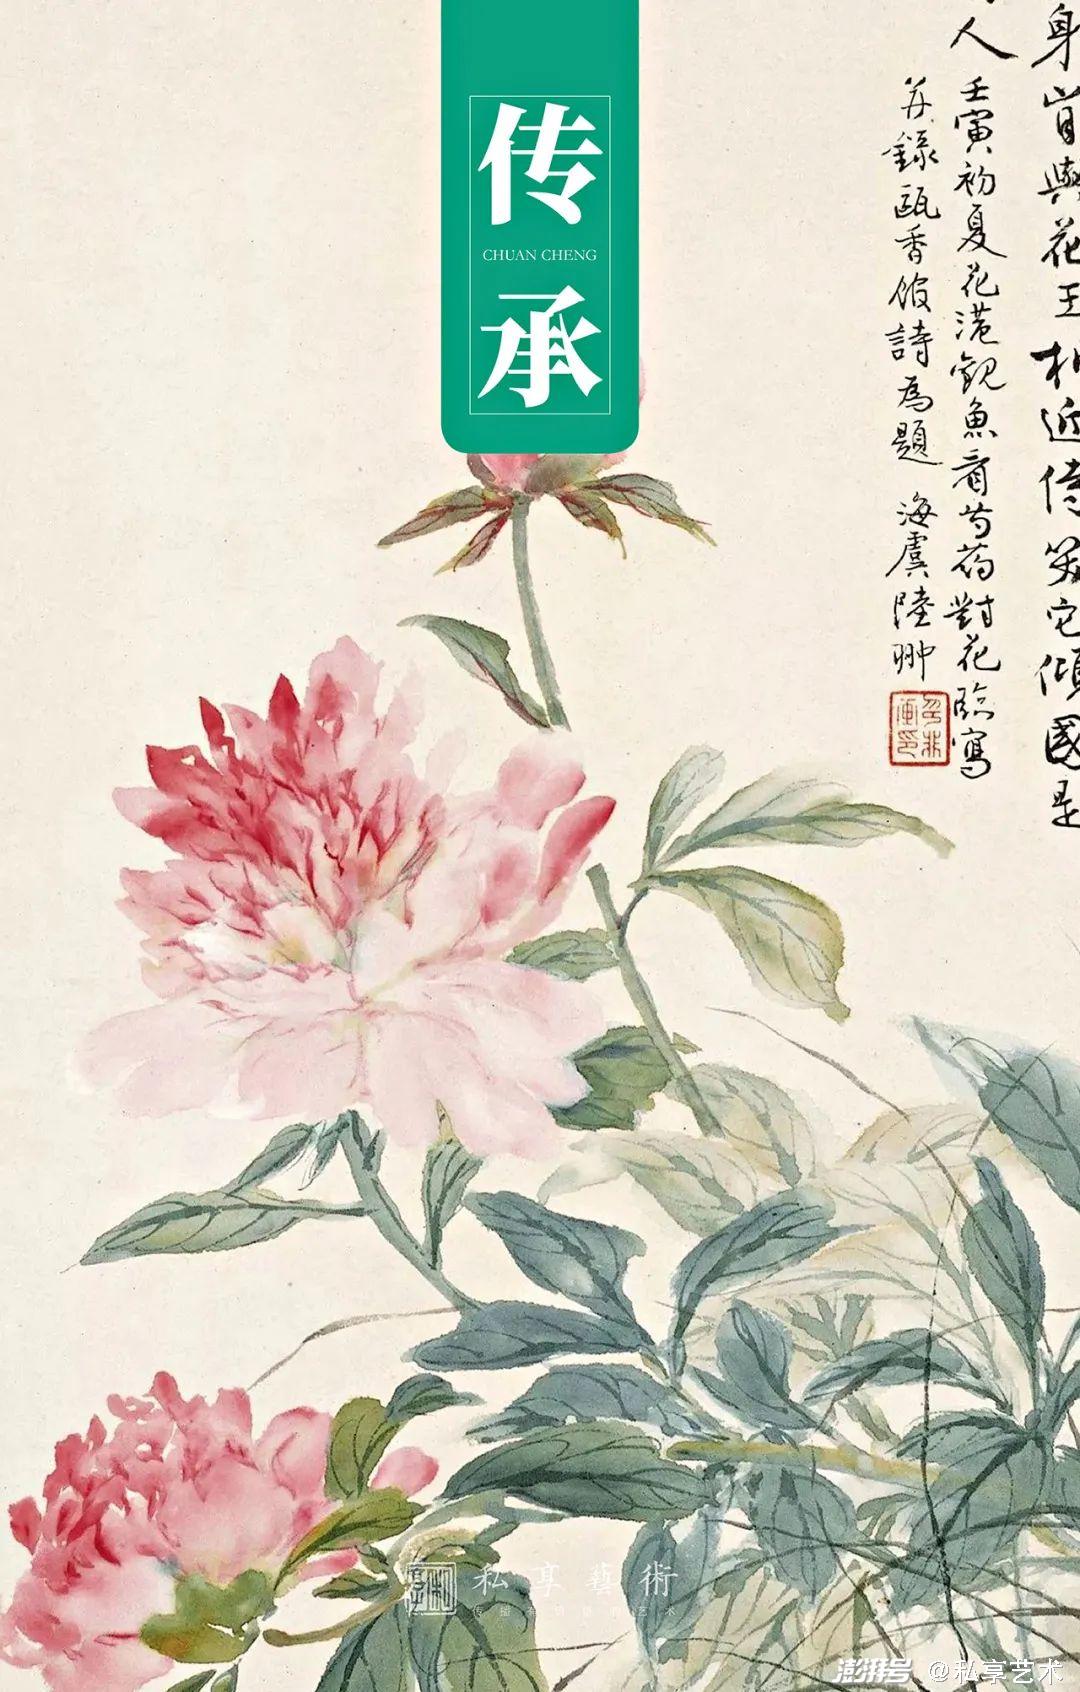 東江写生帳♢♢♢♢上 ✨生命ある野の花✨ | camillevieraservices.com